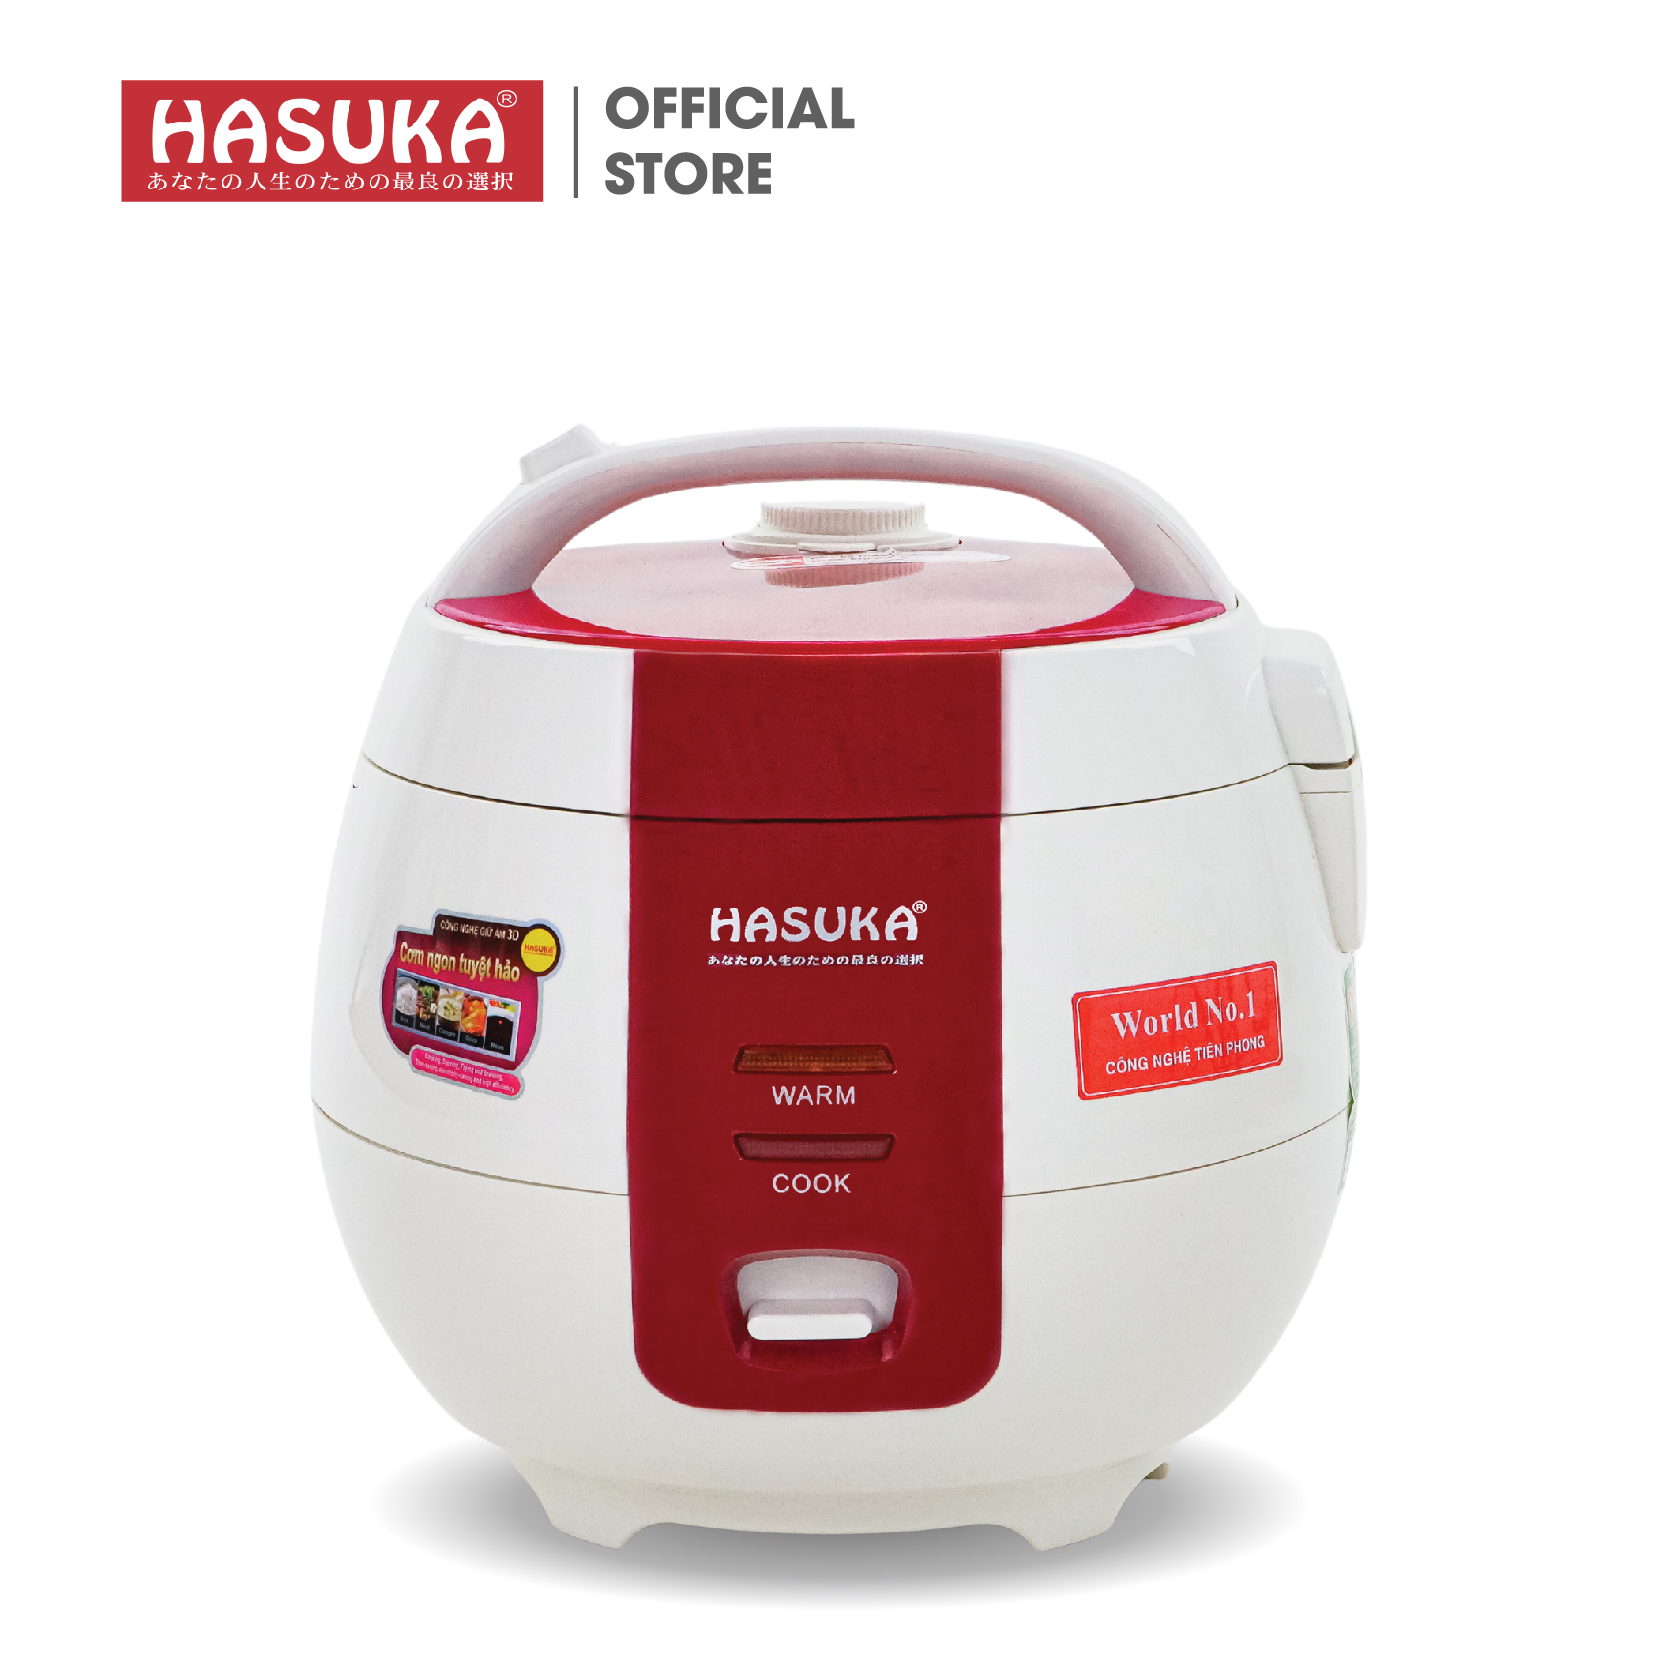 NỒI CƠM ĐIỆN HASUKA HSK-801